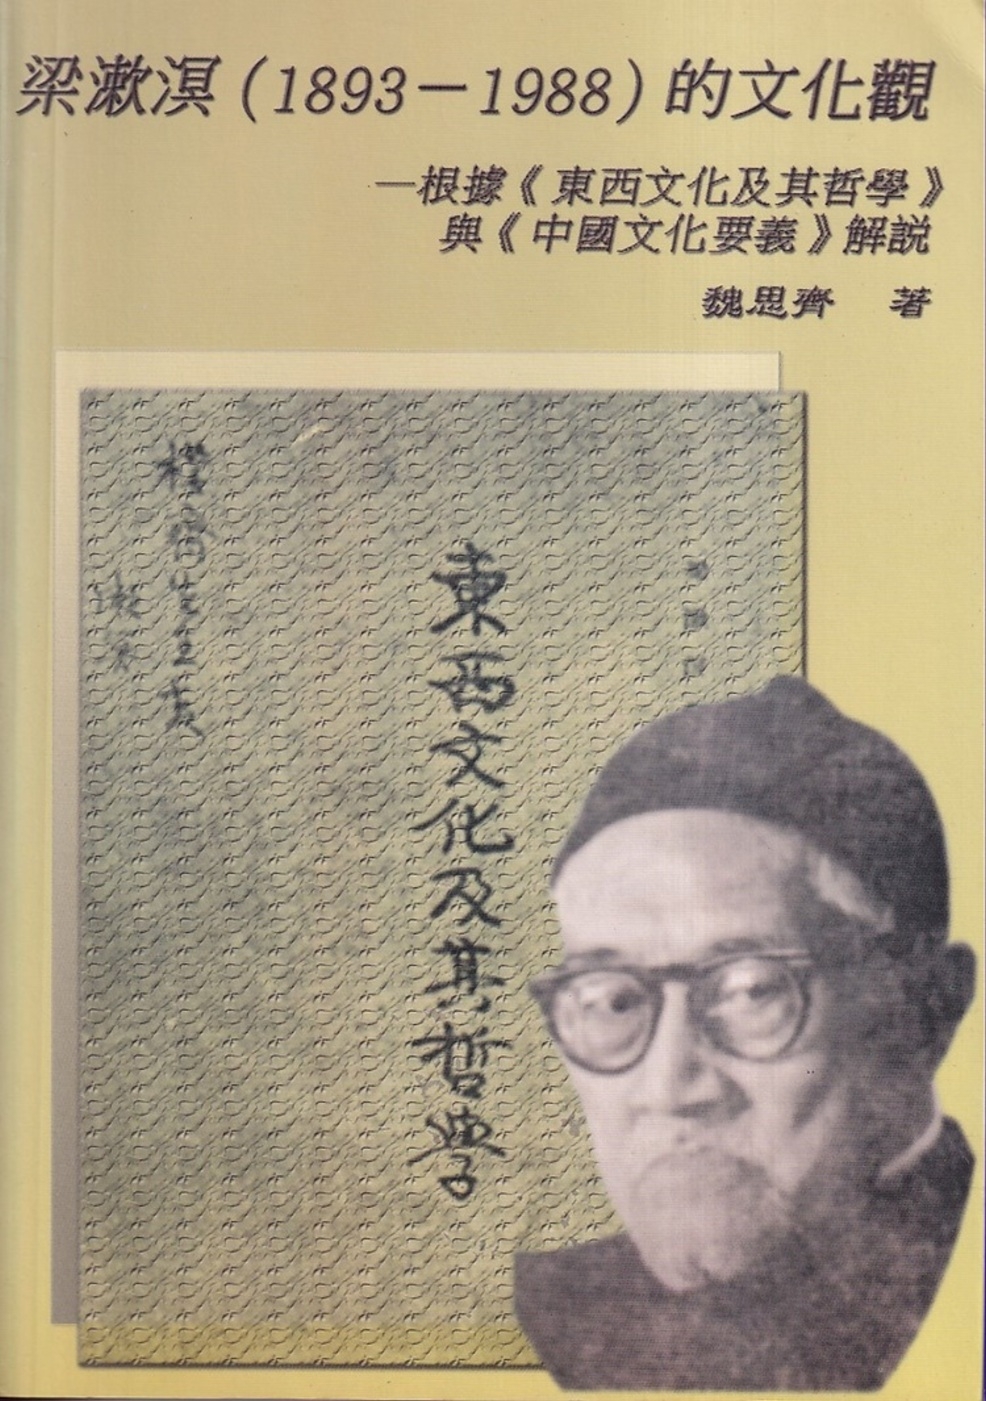 梁漱溟(1893-1988)的文化觀:根據《東西文化及其哲學...